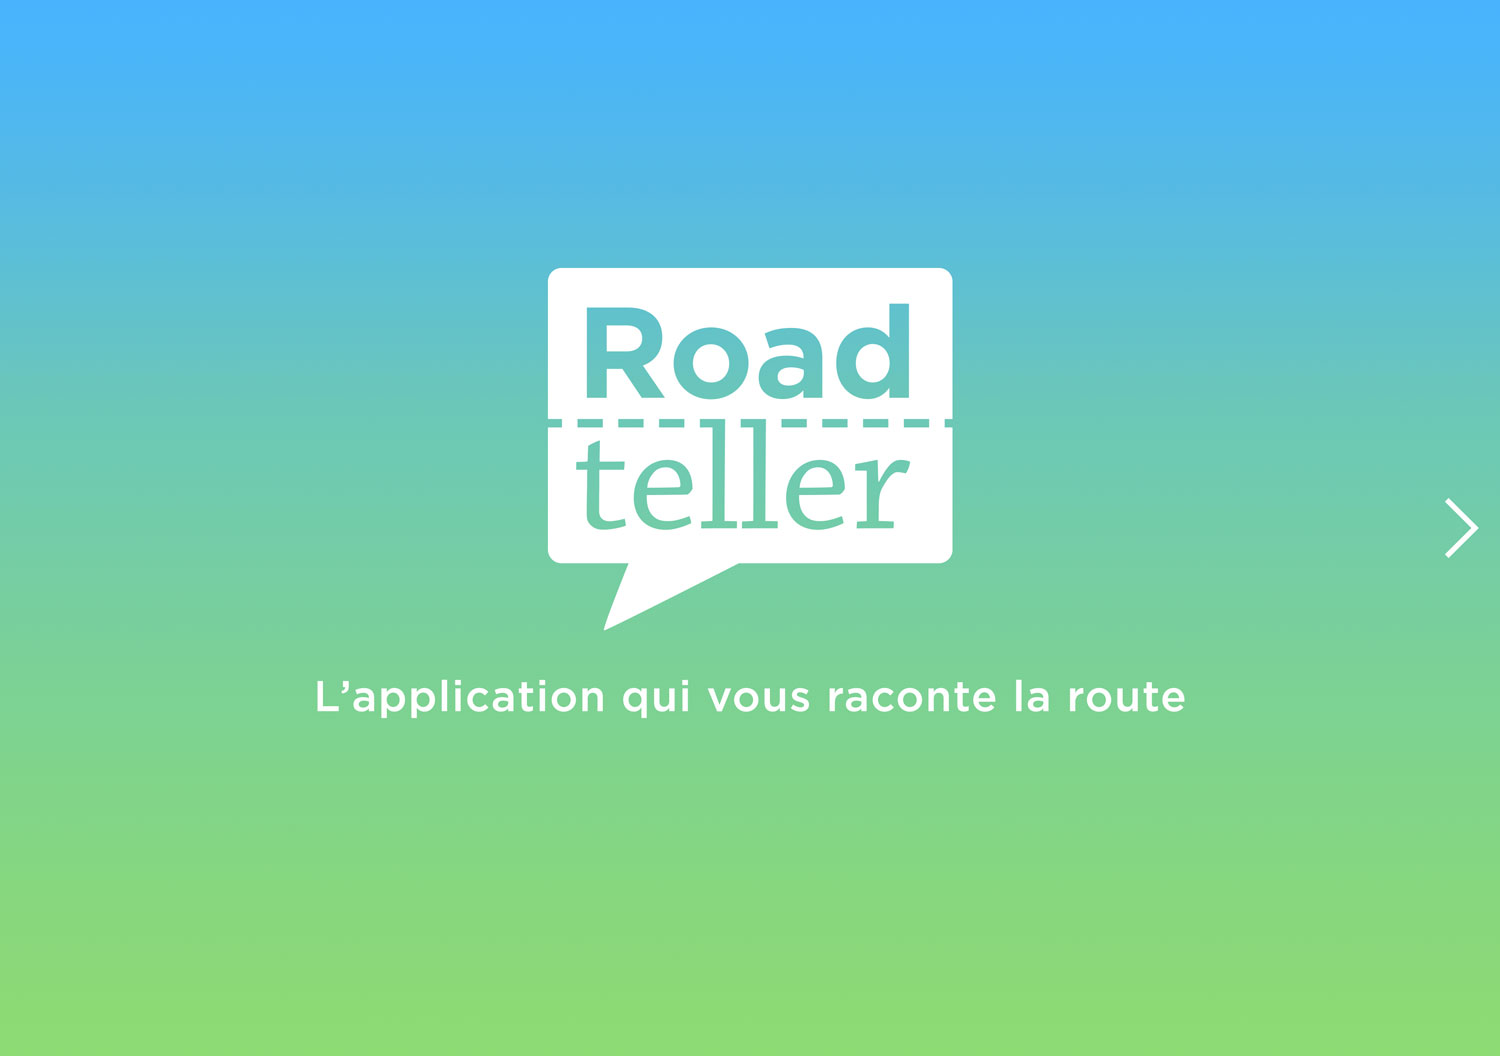 L'application RoadTeller vous raconte la route